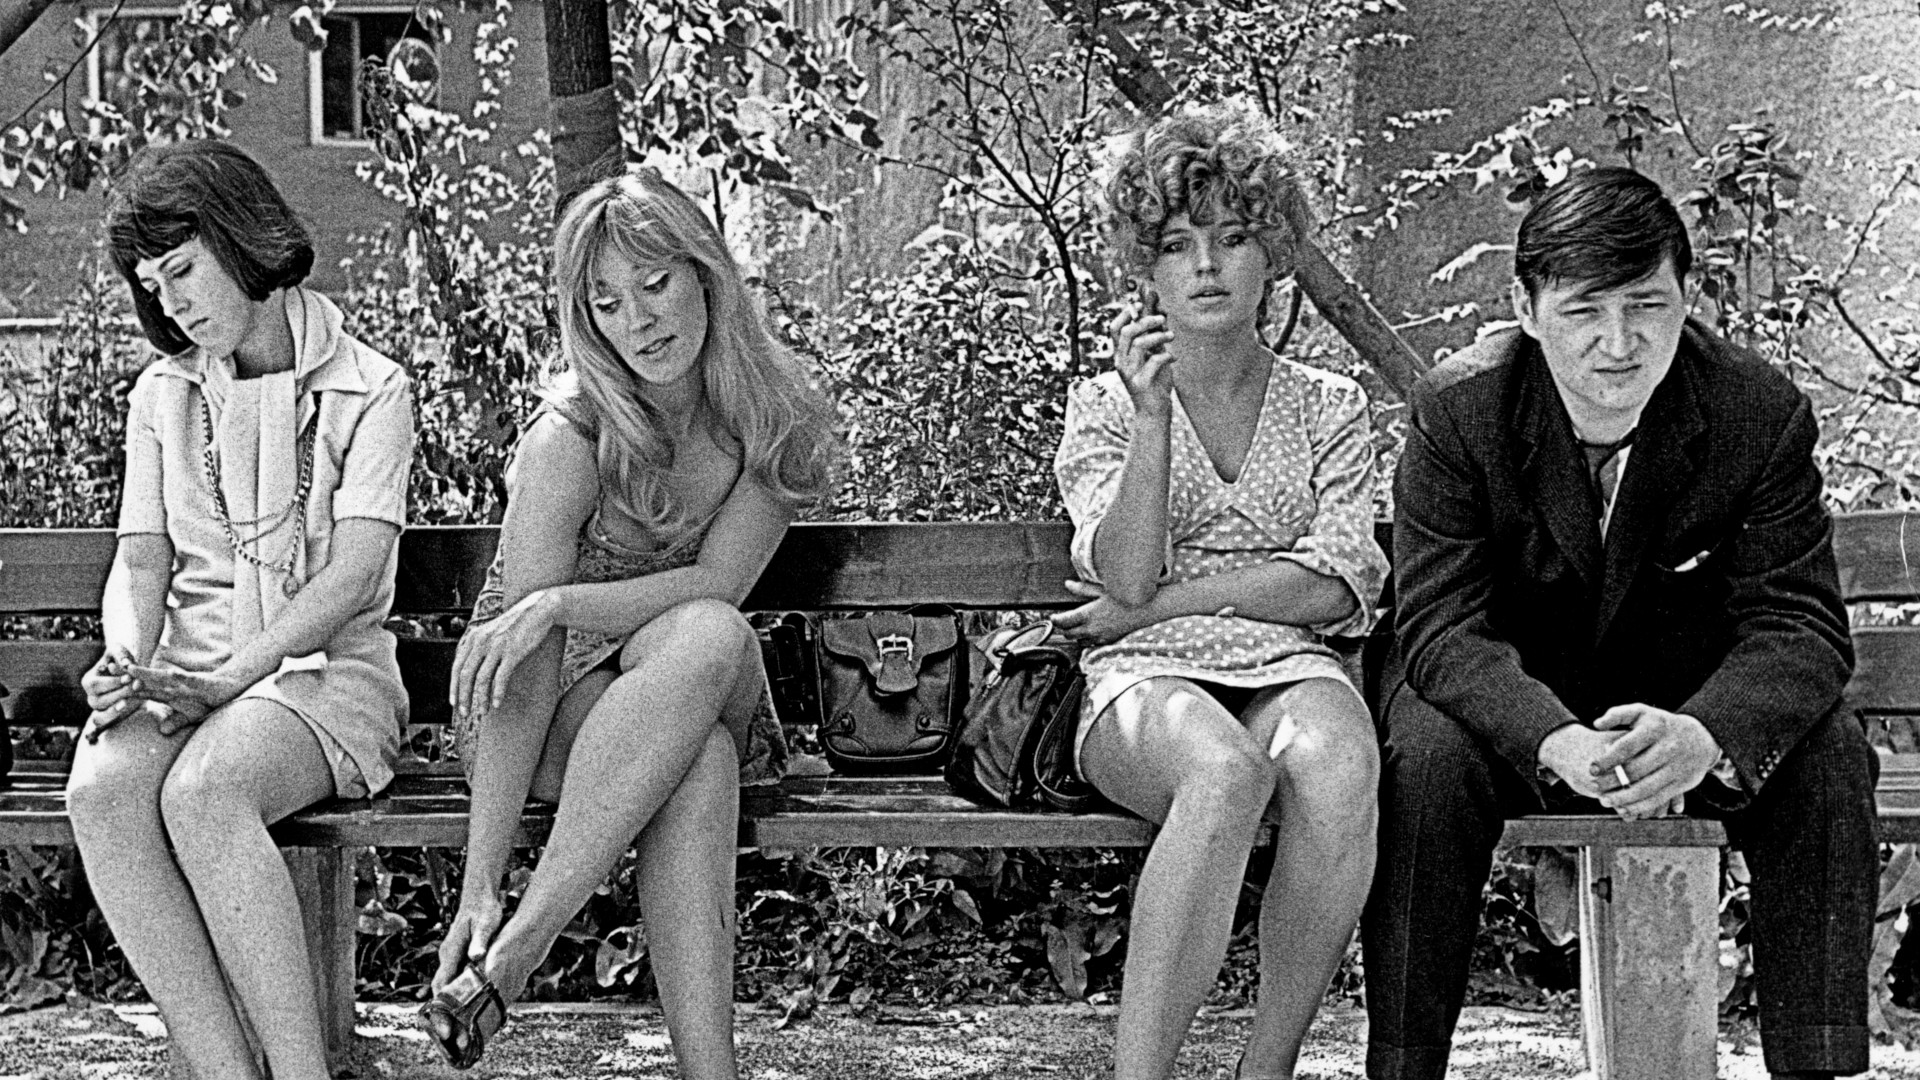 Filmstill aus dem Schwarz-Weiß-Film Katzelmacher. Drei Frauen sitzen auf einer Bank zusammen mit einem schwarz gekleideten Mann.